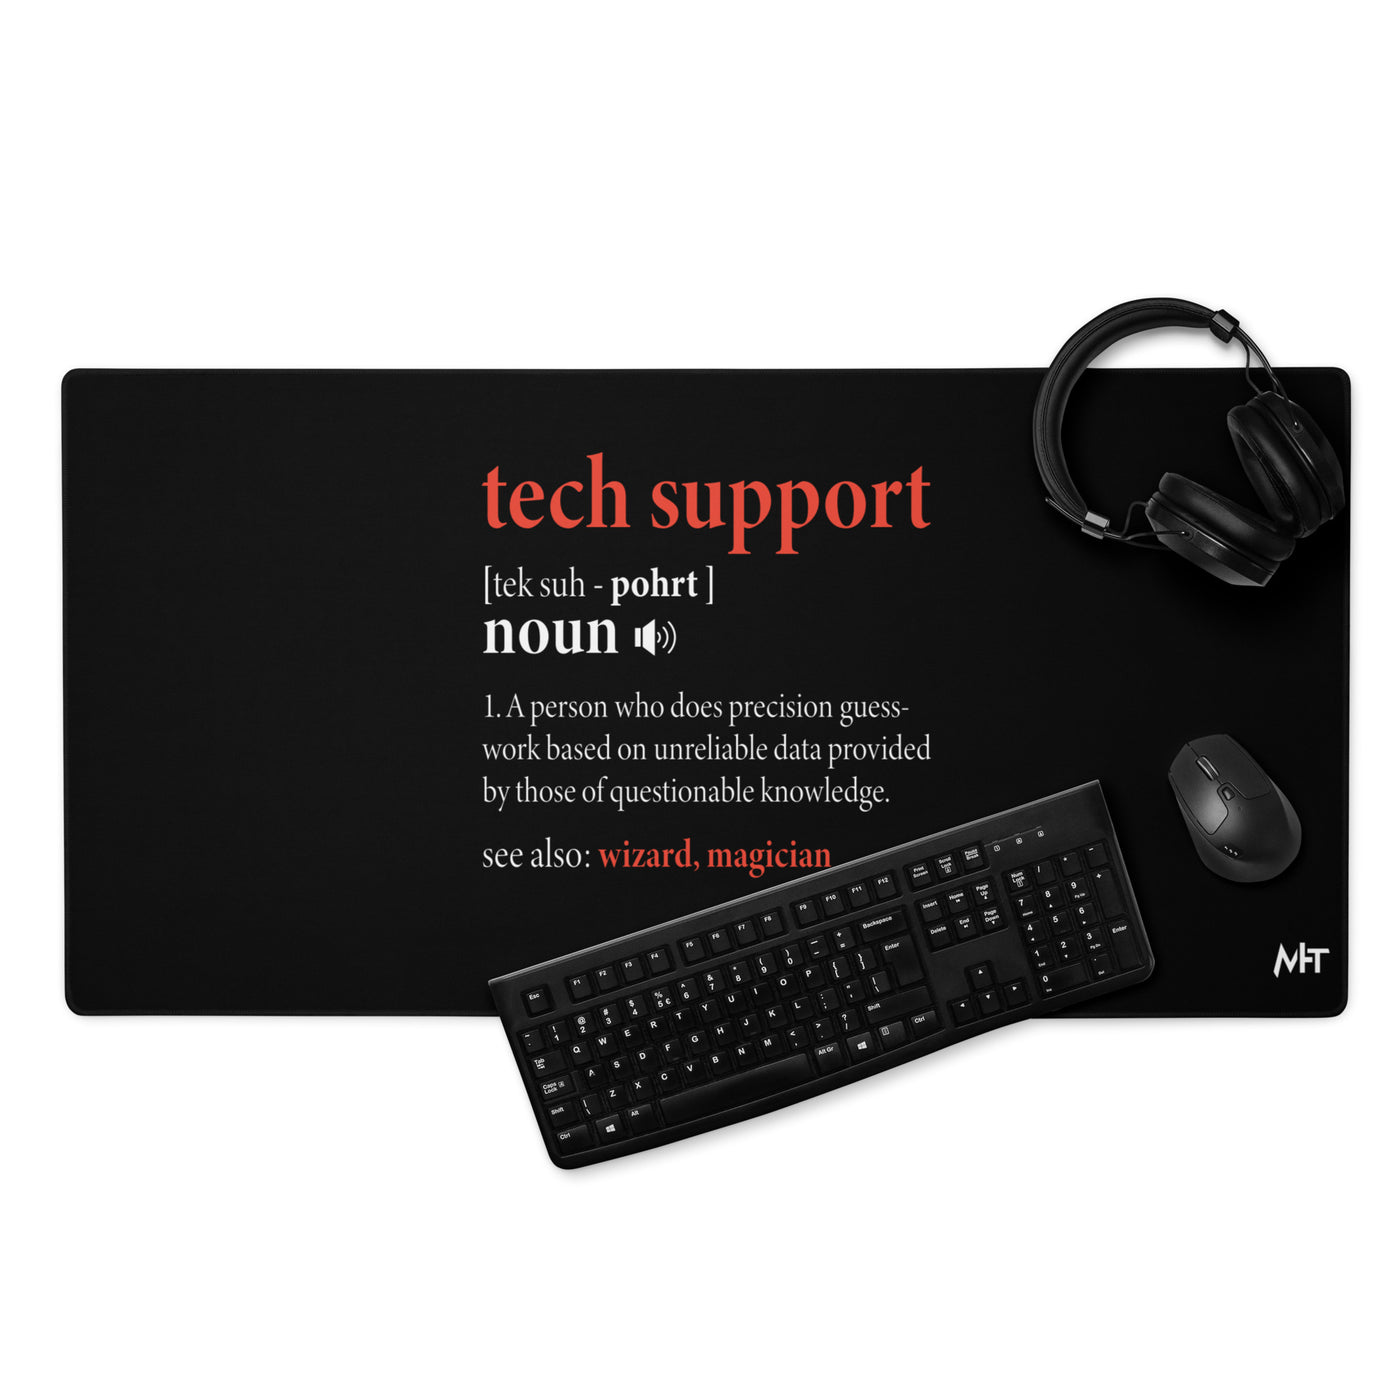 Tech Support Definition - Desk Mat